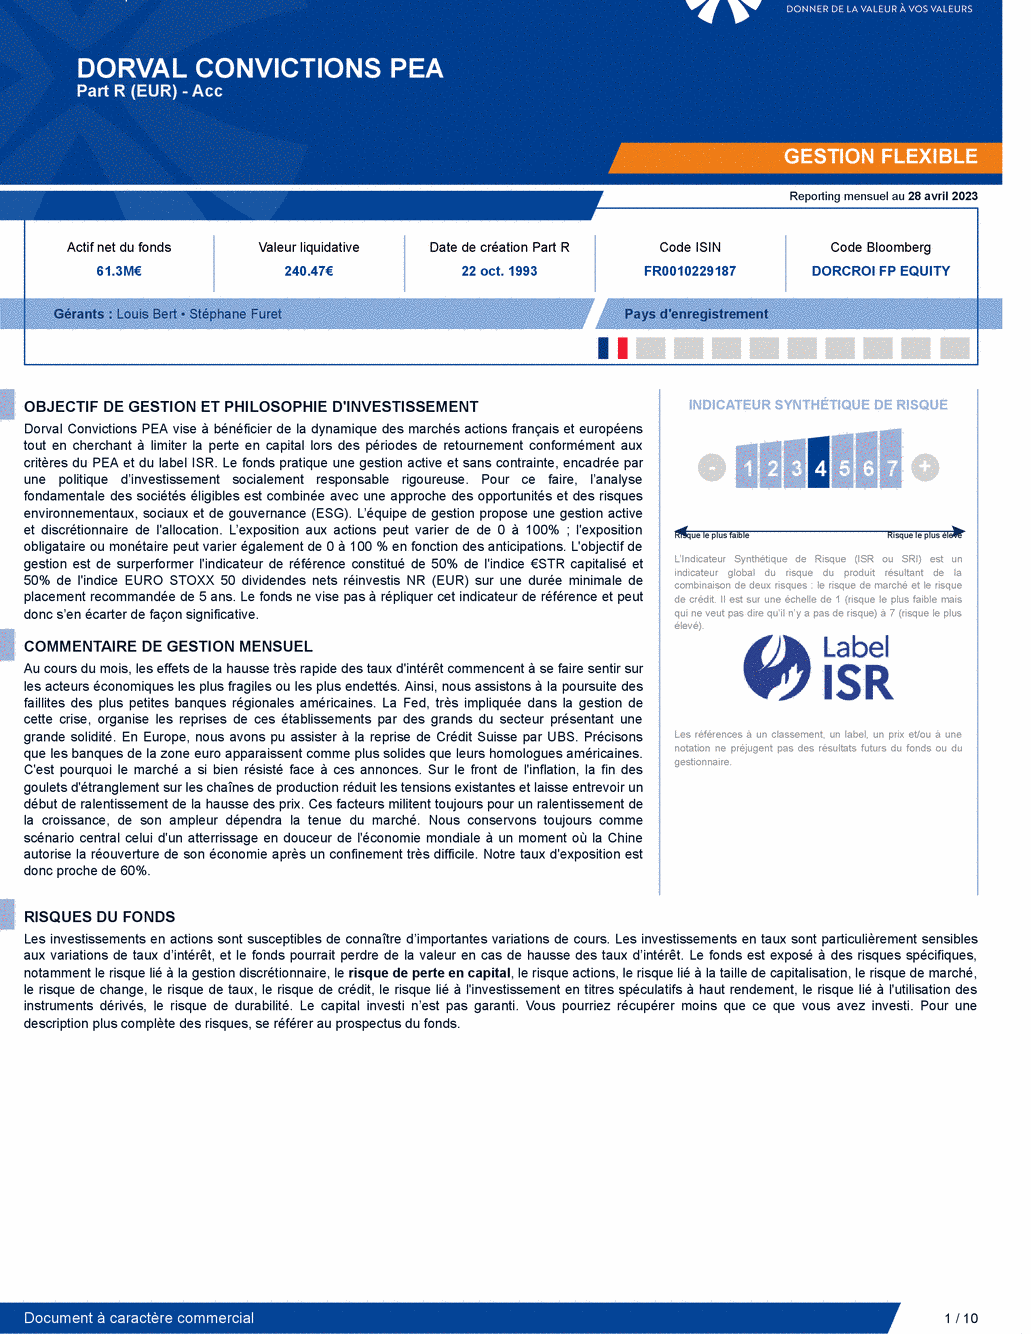 Reporting DORVAL CONVICTIONS PEA - 28/04/2023 - Français